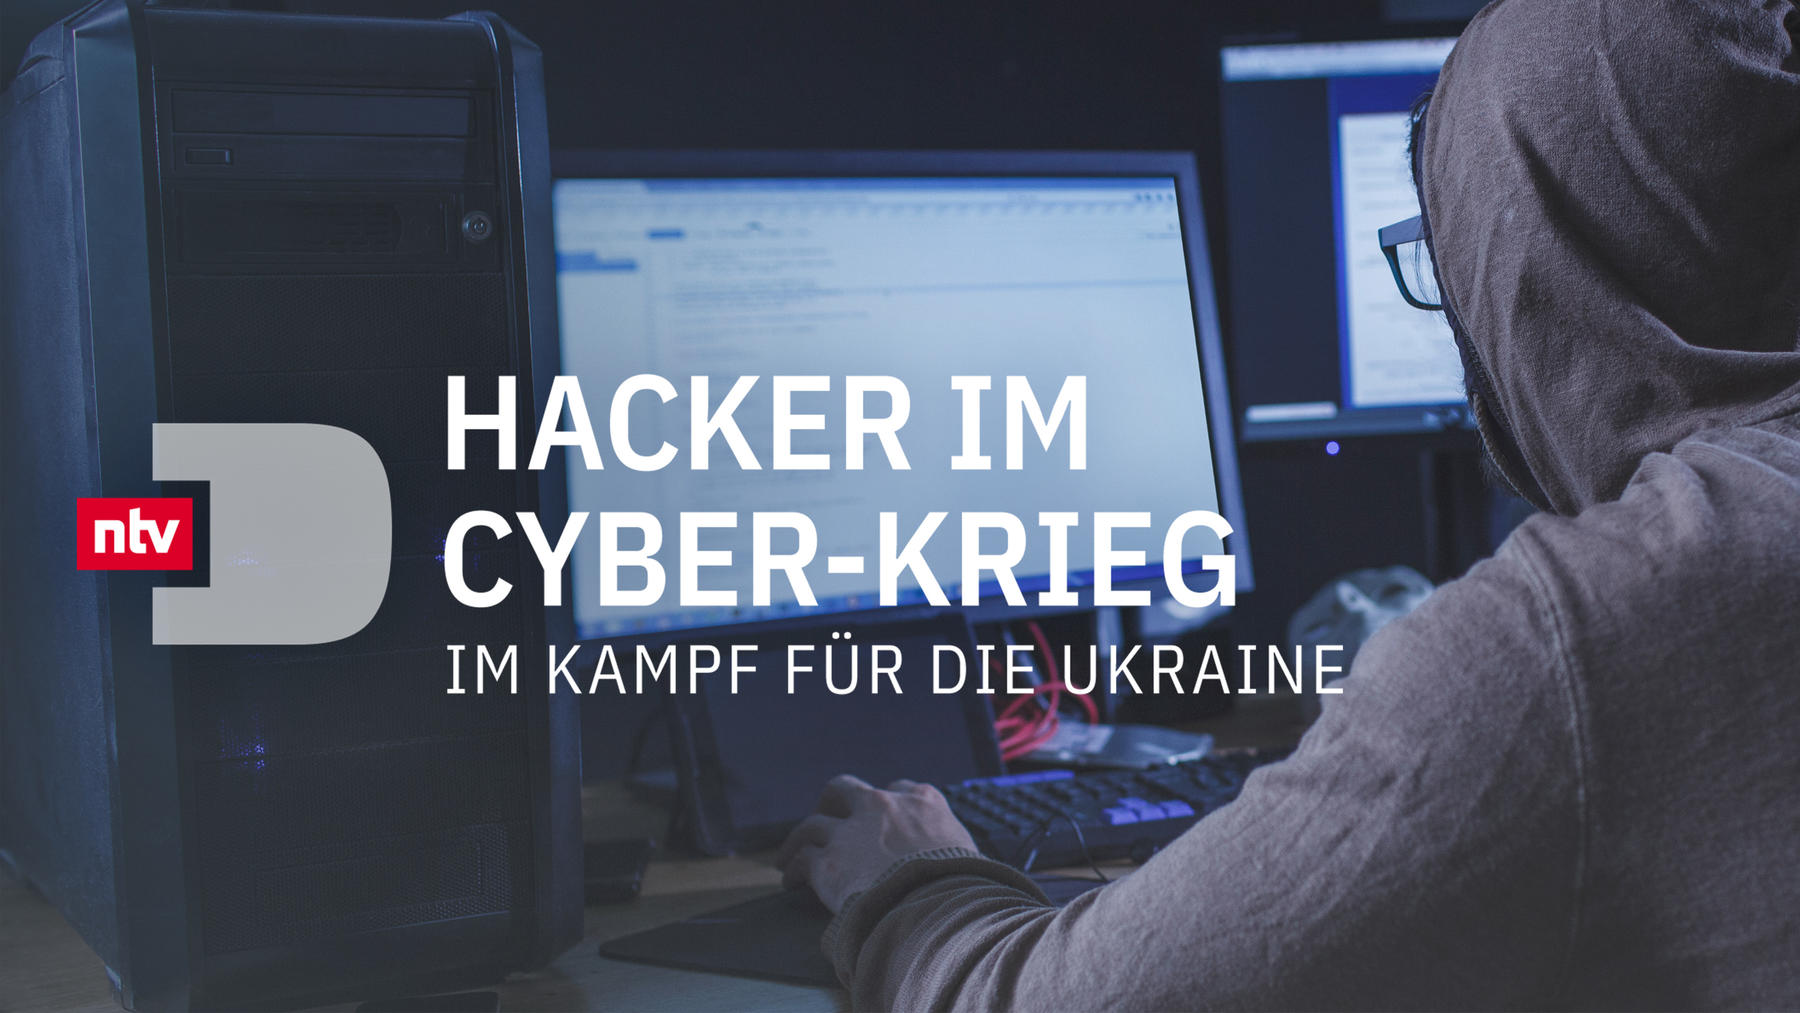 Hacker im Cyber-Krieg - Im Kampf für die Ukraine